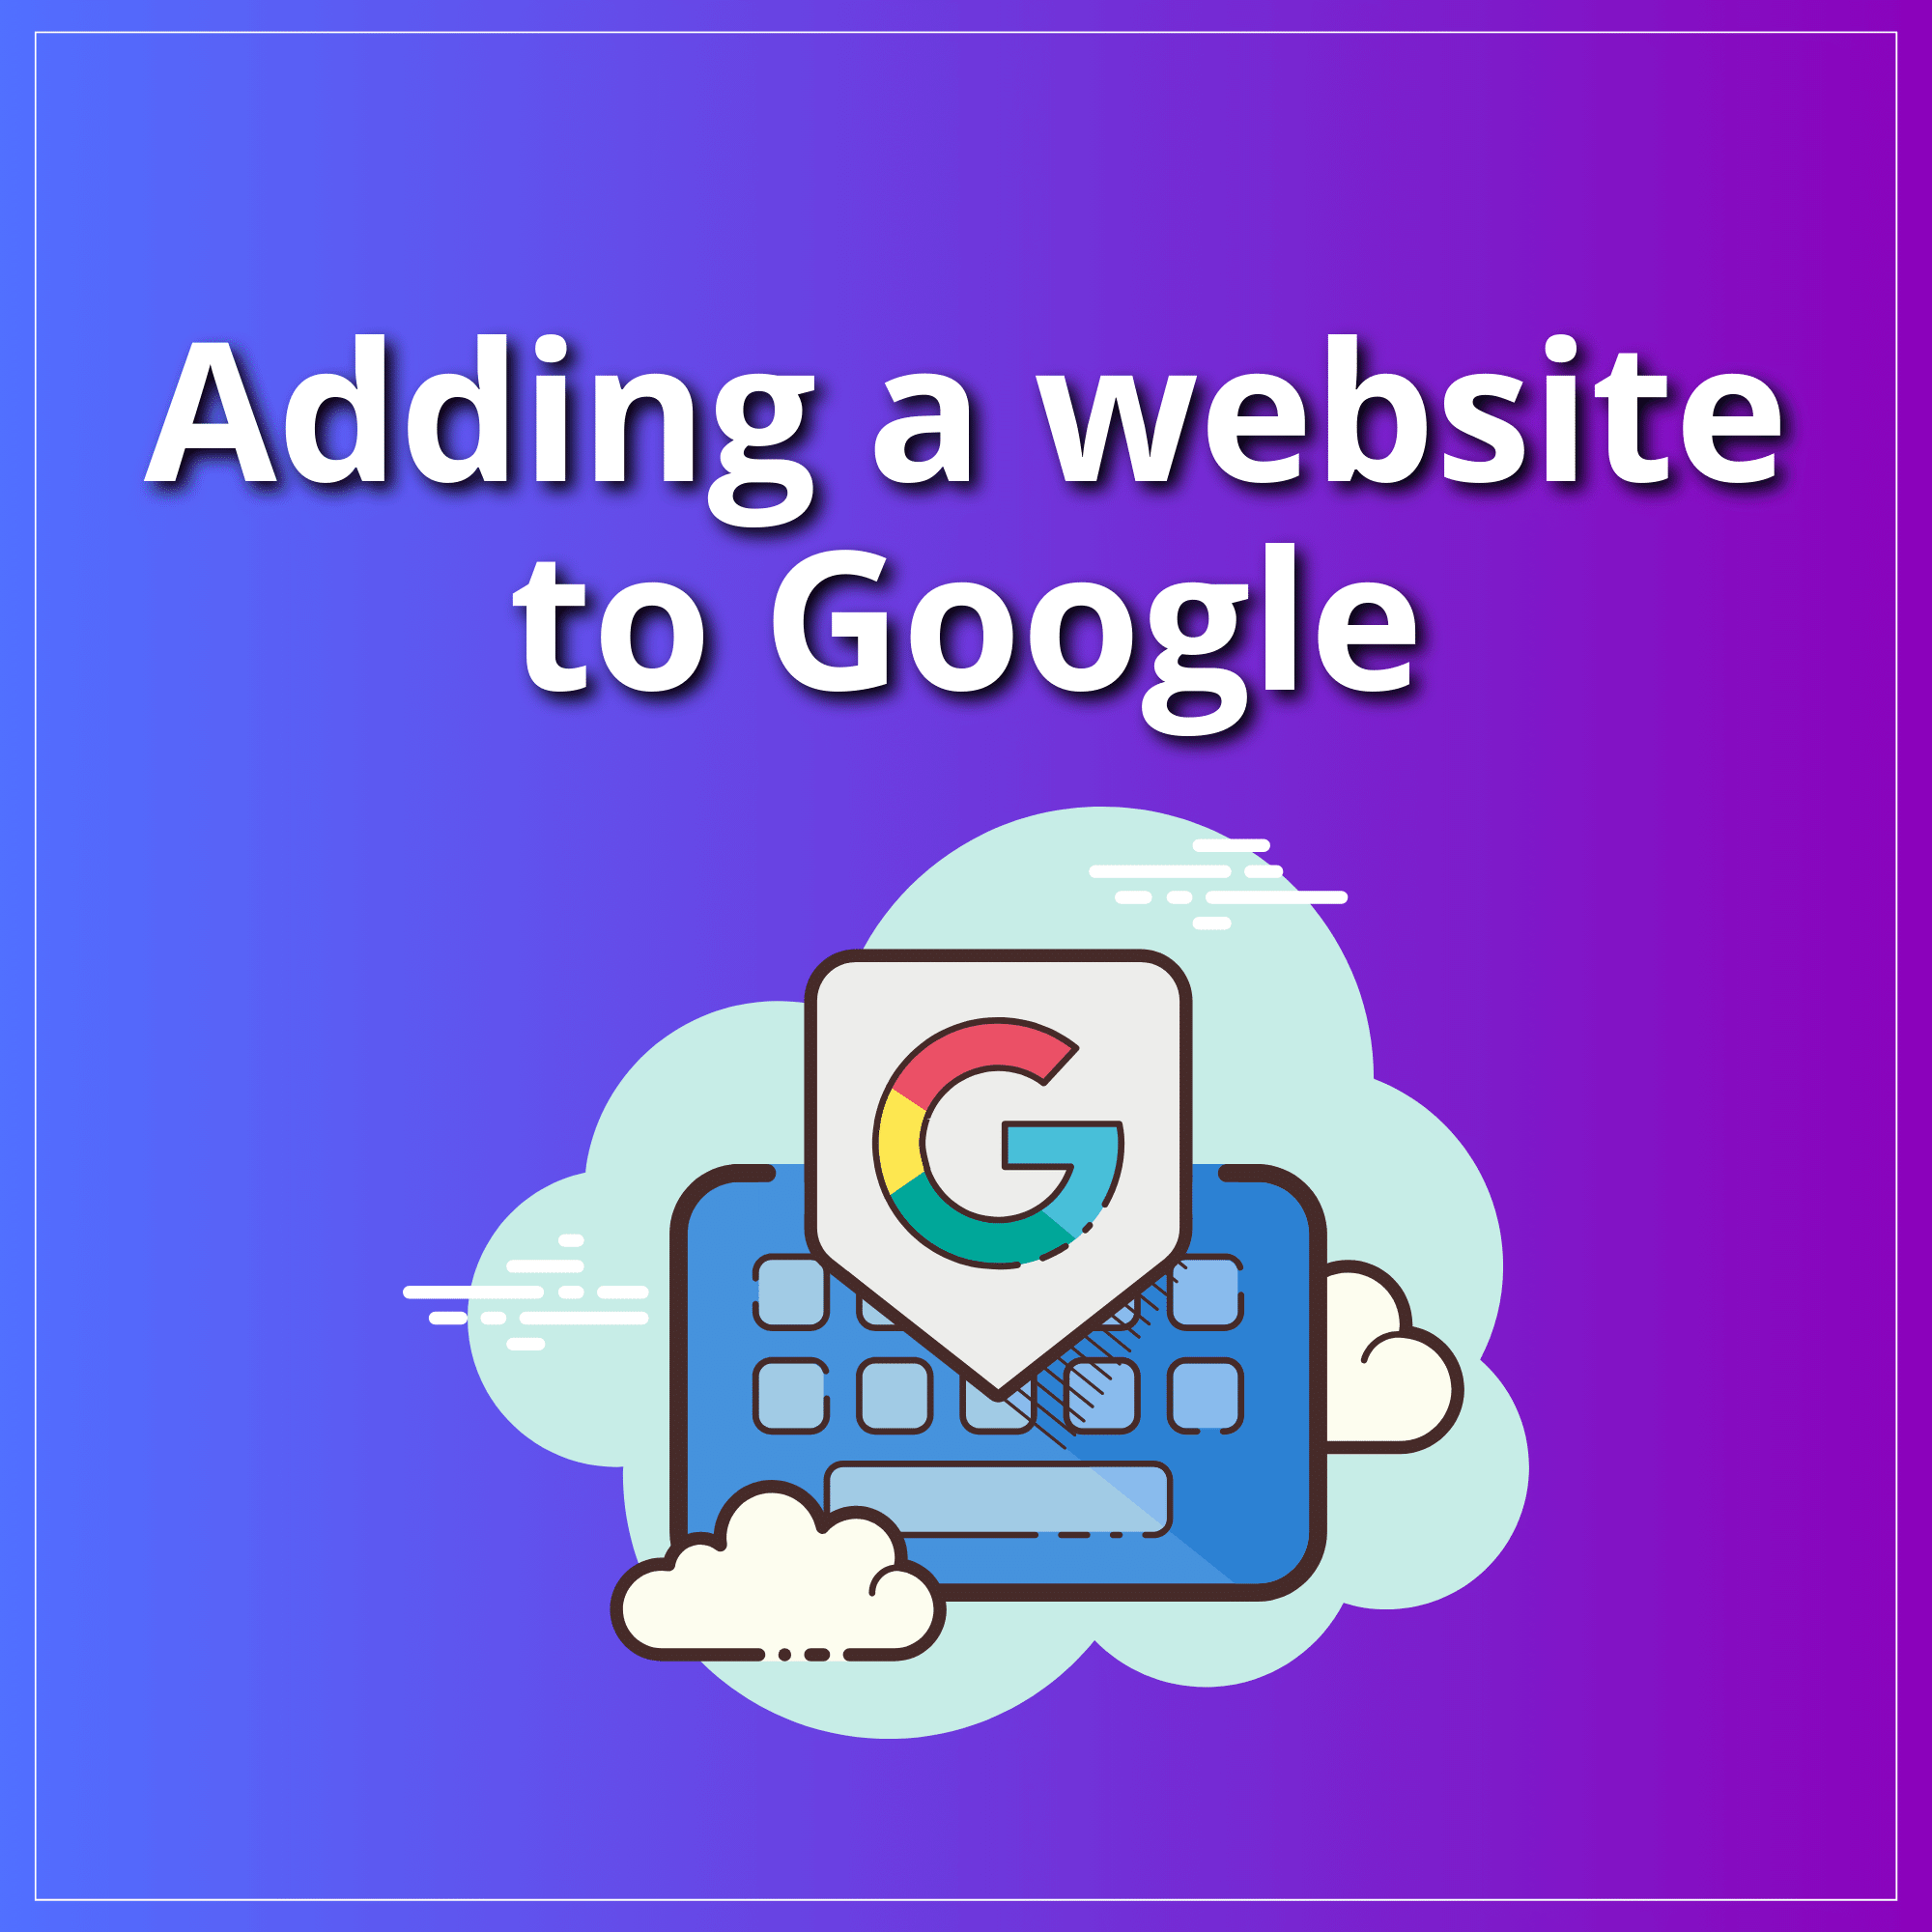 Adding a website to Google